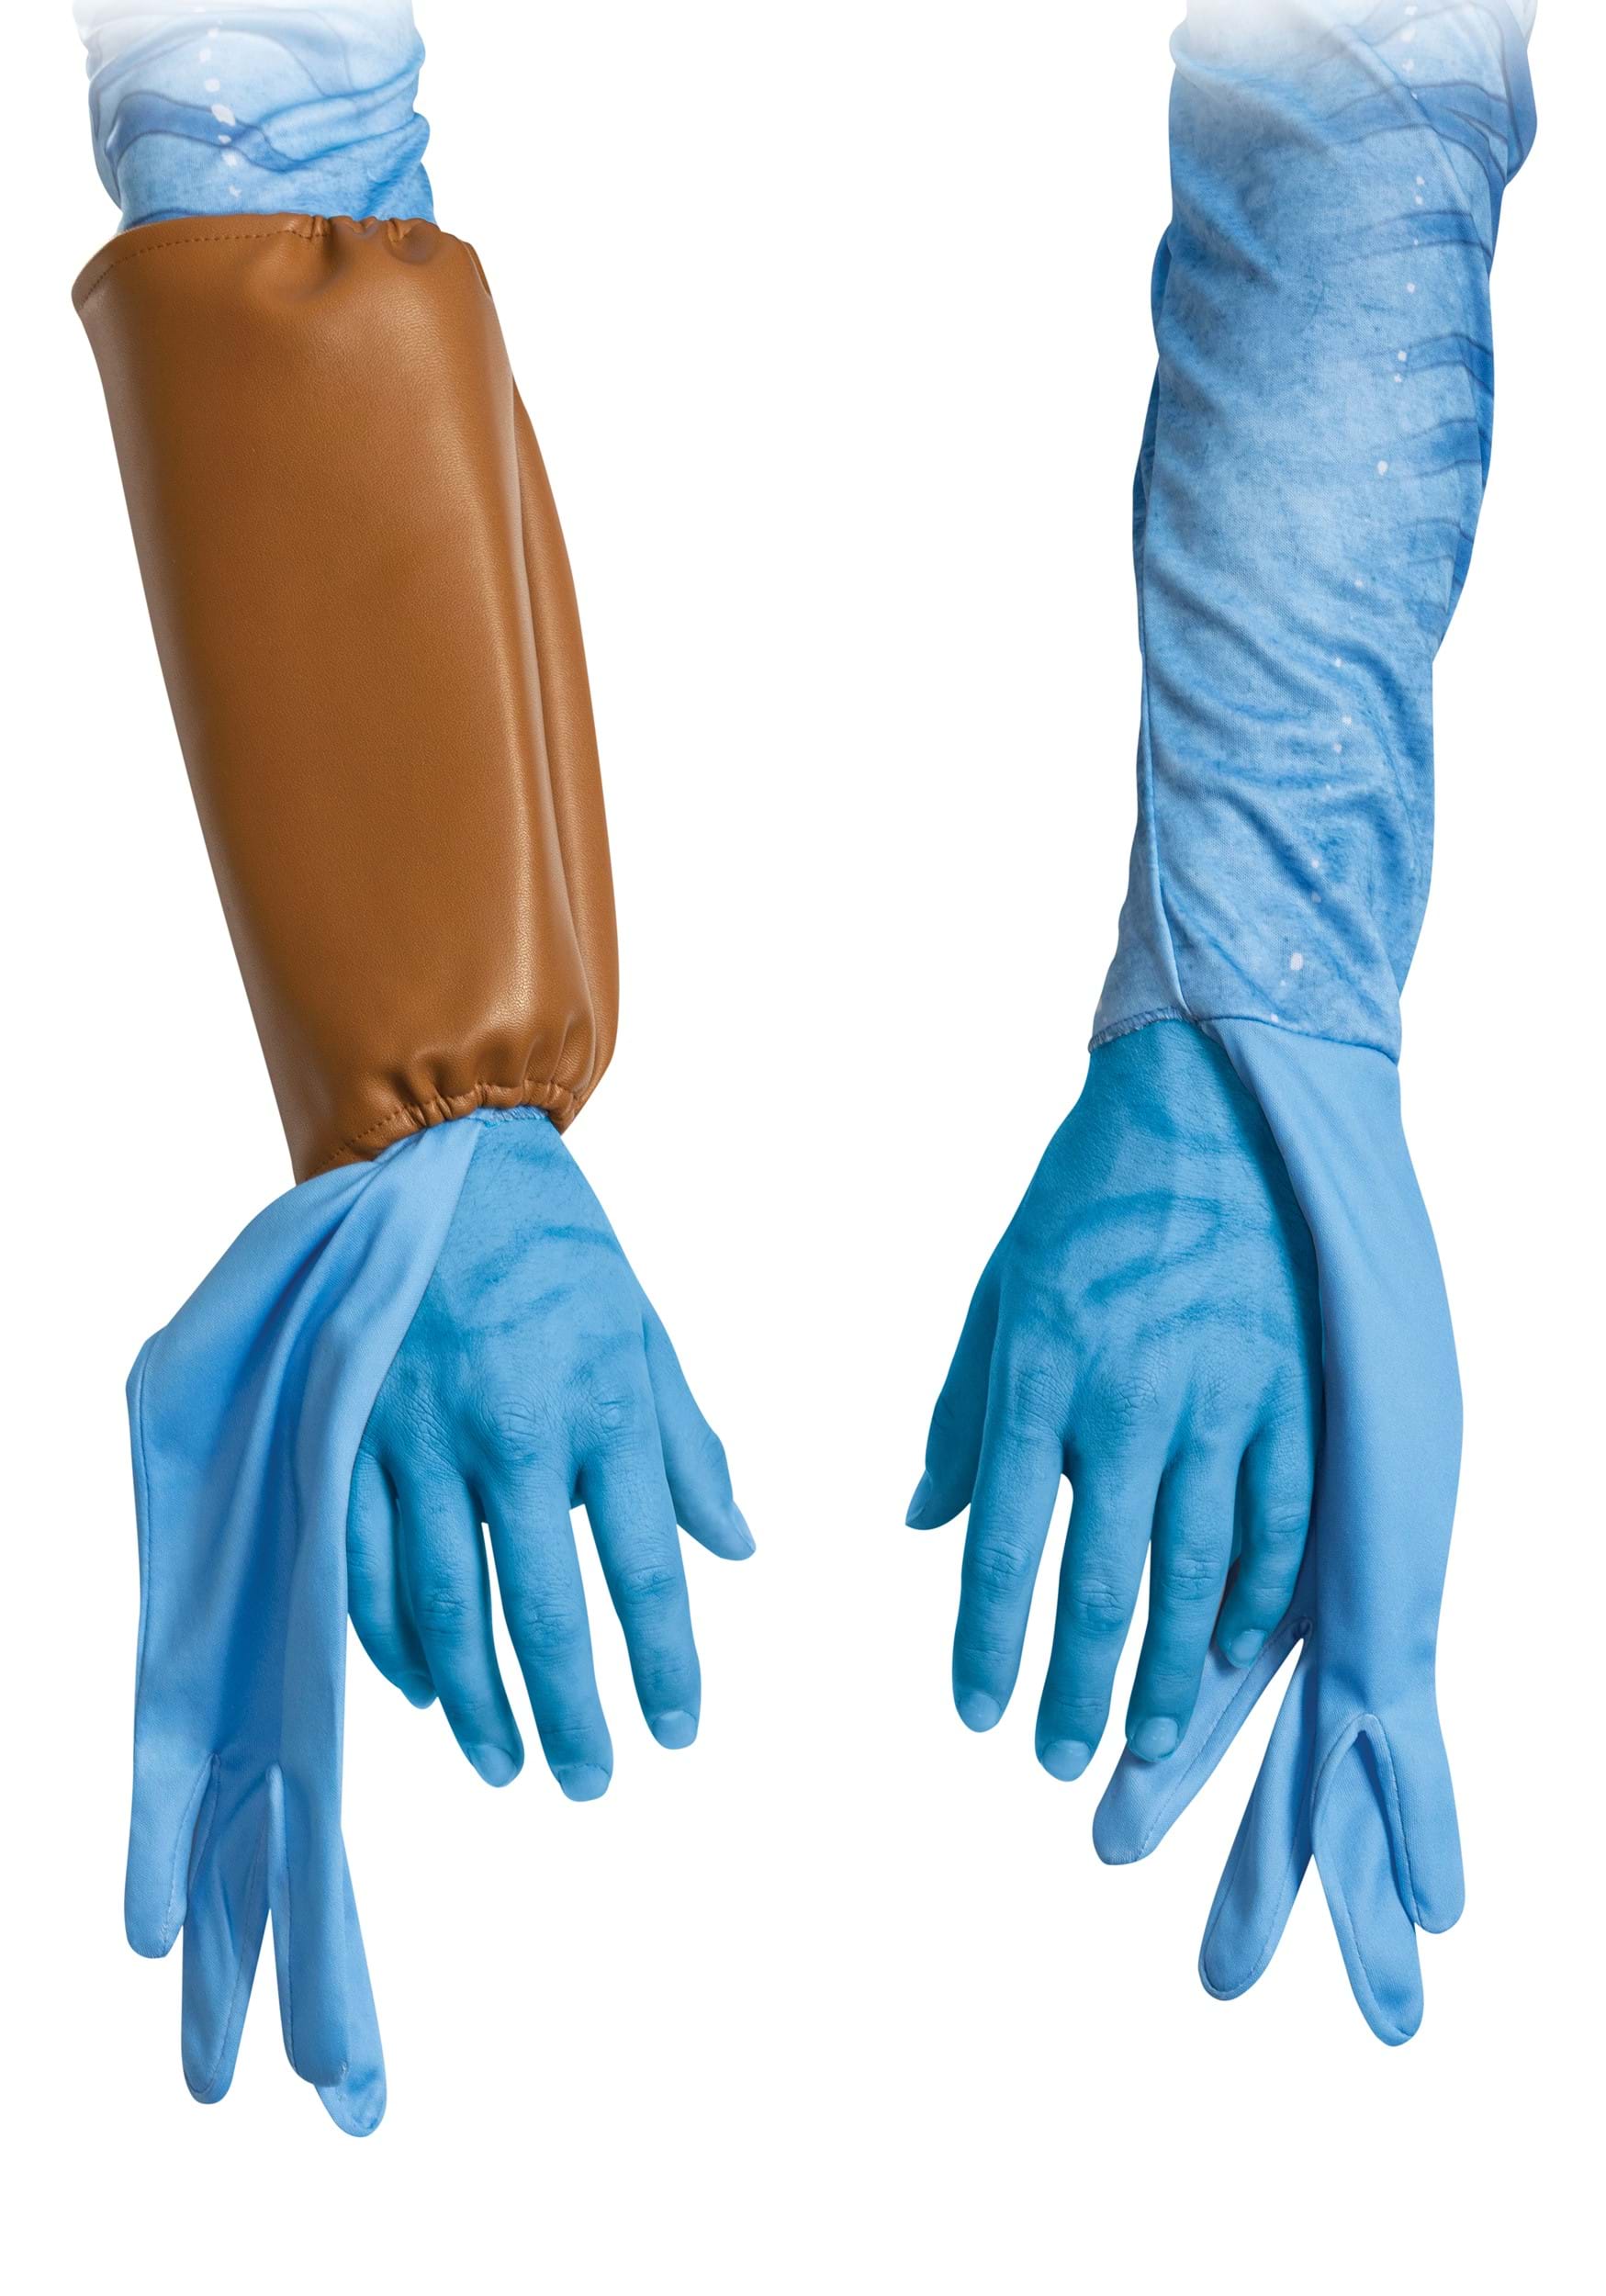 Avatar Men's Deluxe Jake Costume